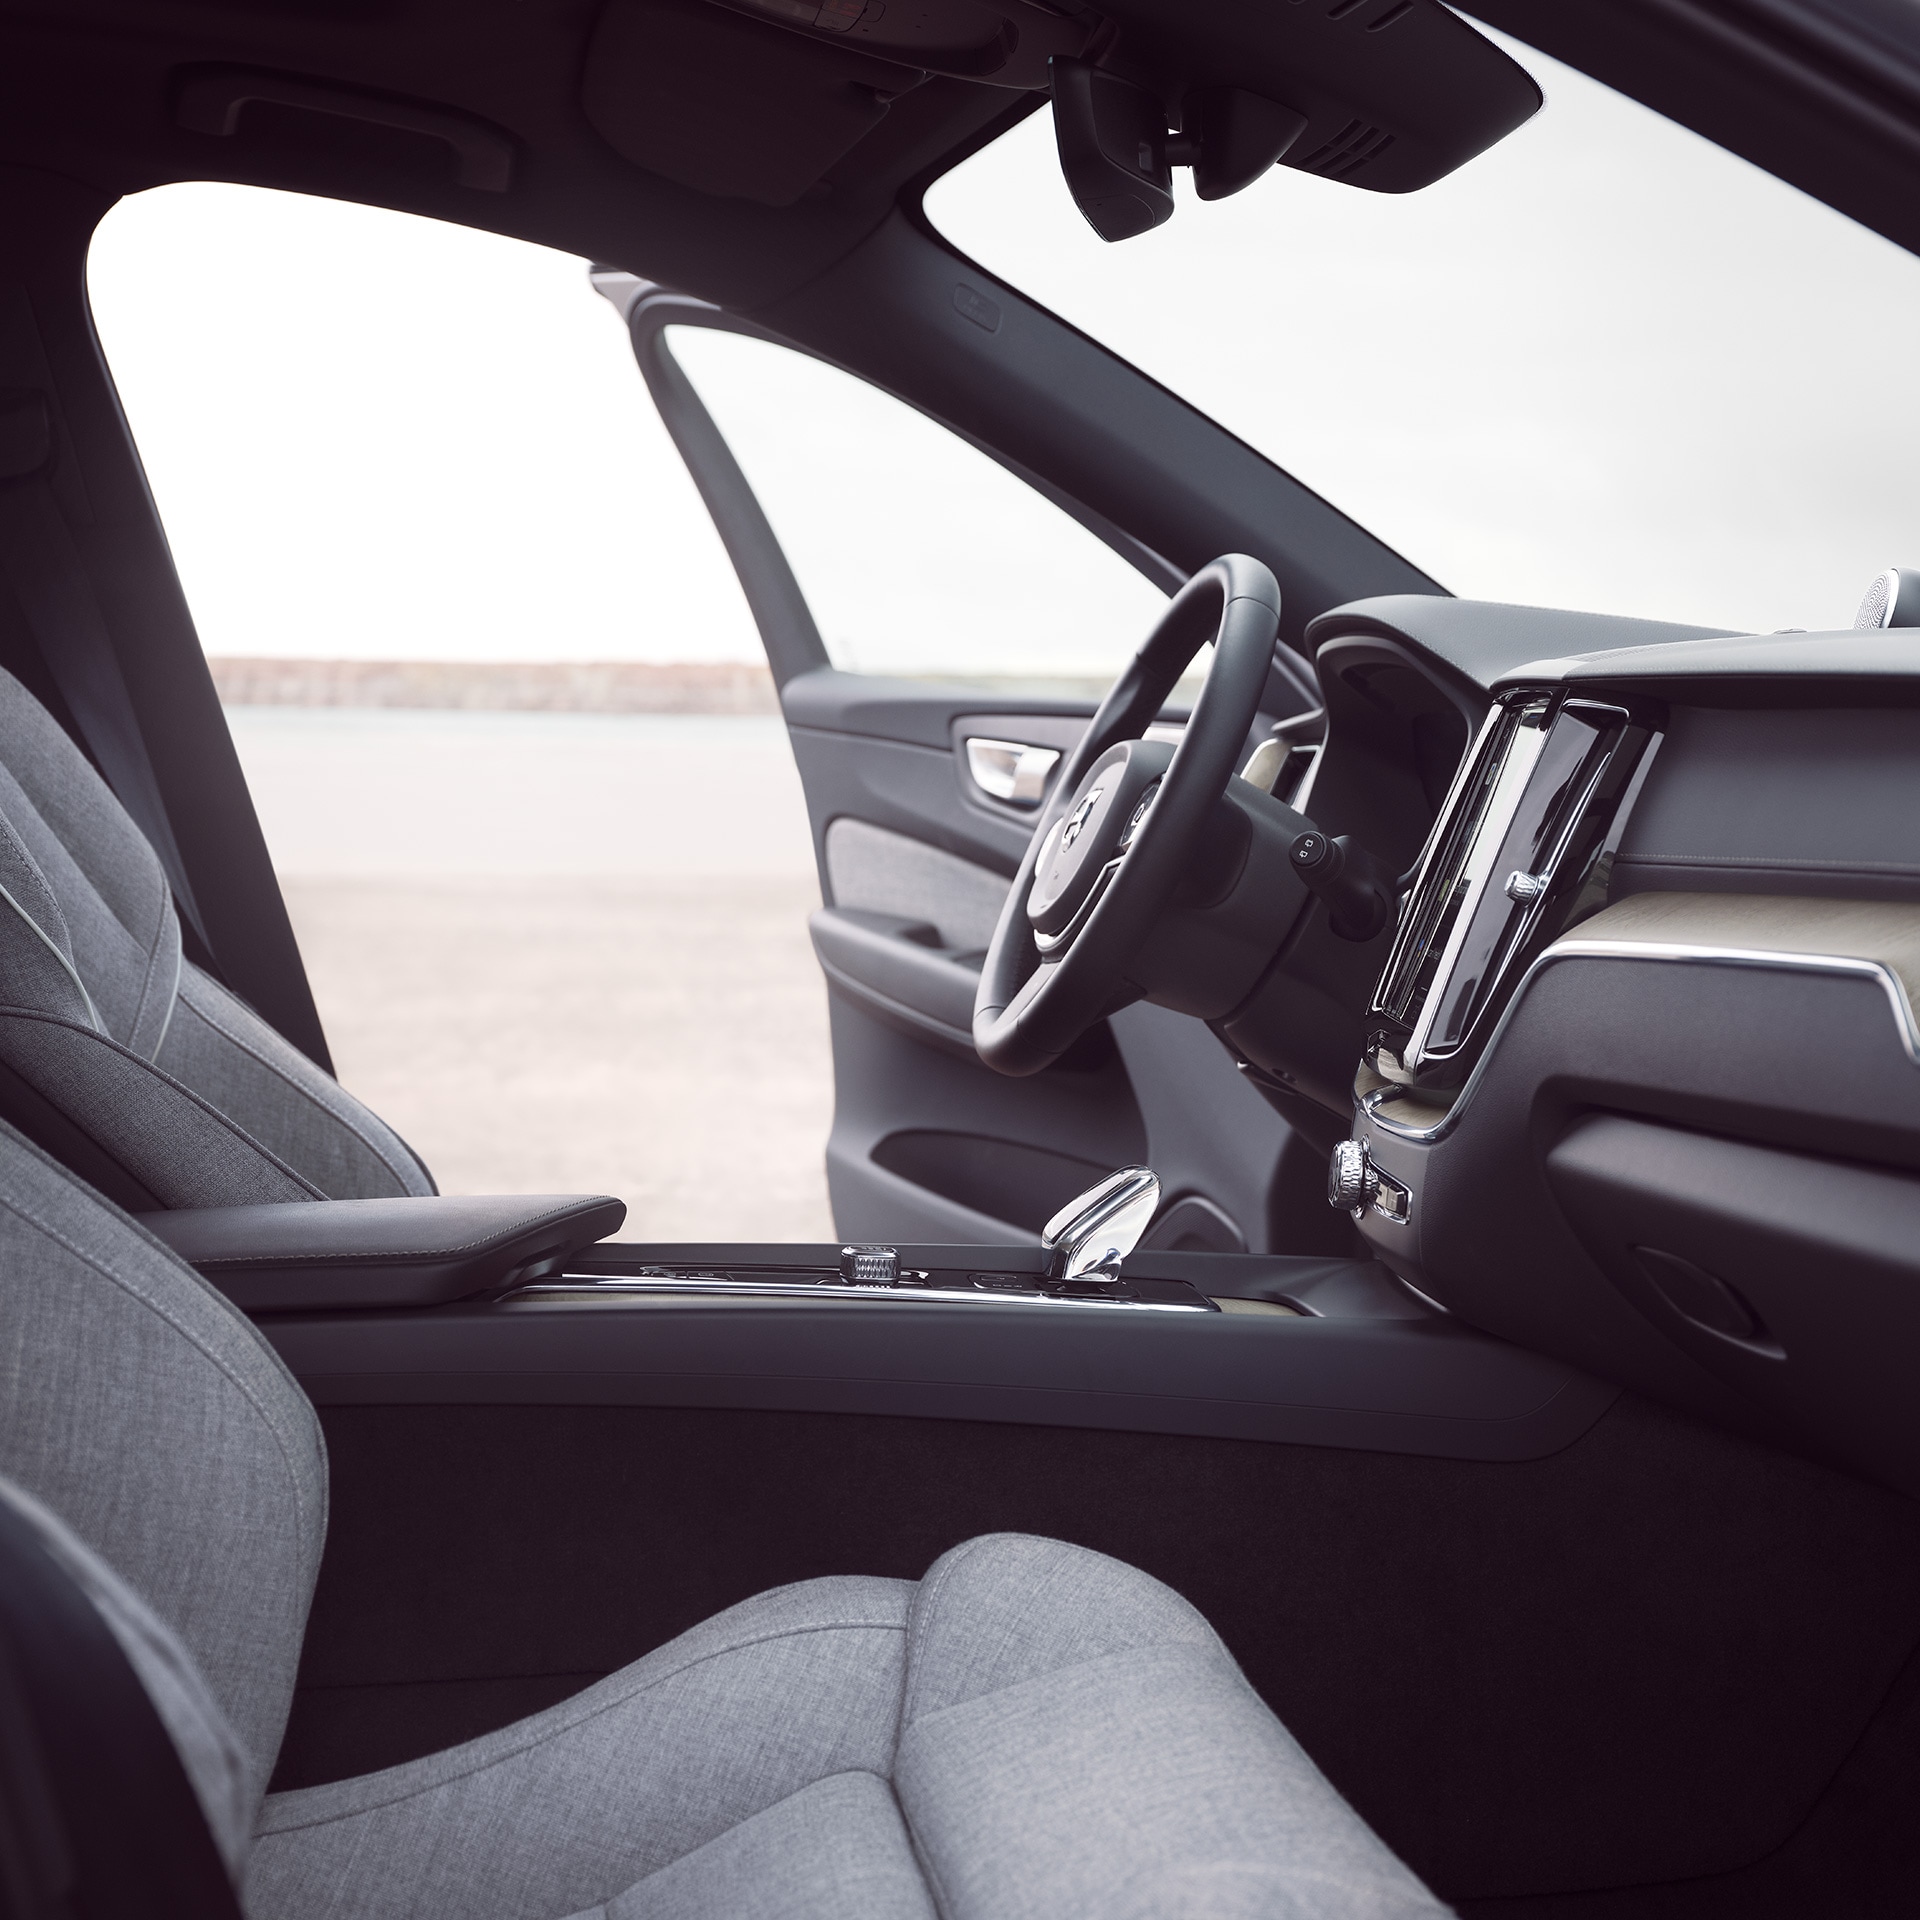 Přední část kabiny vozu Volvo XC60 Recharge s otevřenými dveřmi řidiče.